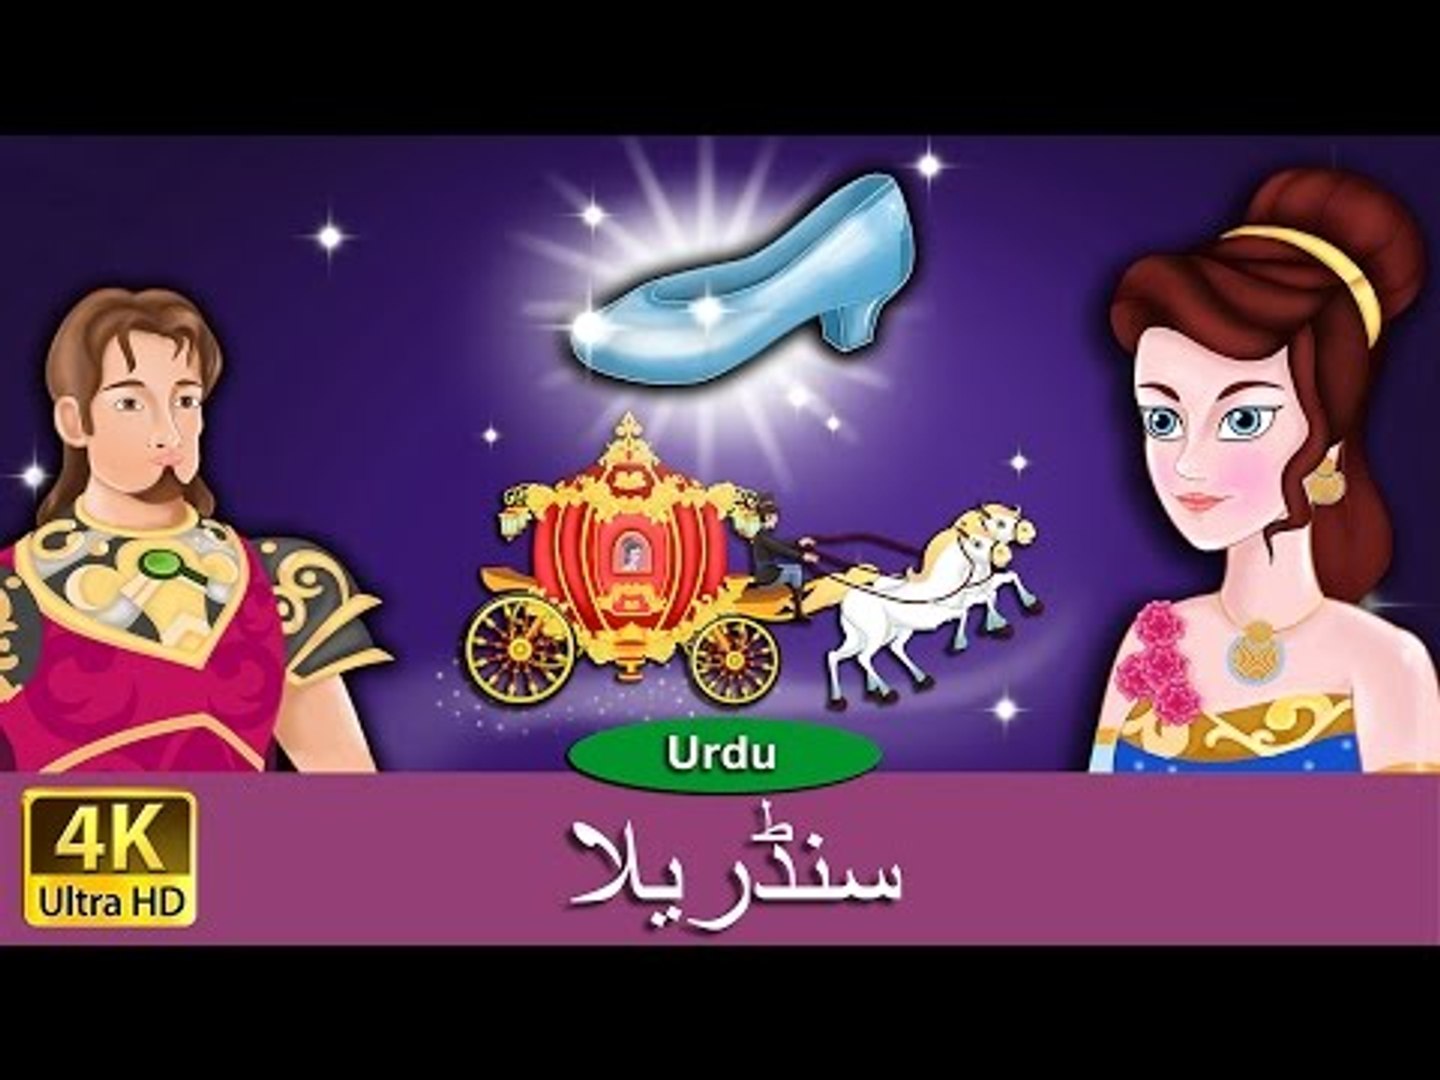 سنڈریلا - اردو پریوں کی کہانیوں - Cinderella - URDU STORIES FOR KIDS - Urdu  Kids Stories - video Dailymotion